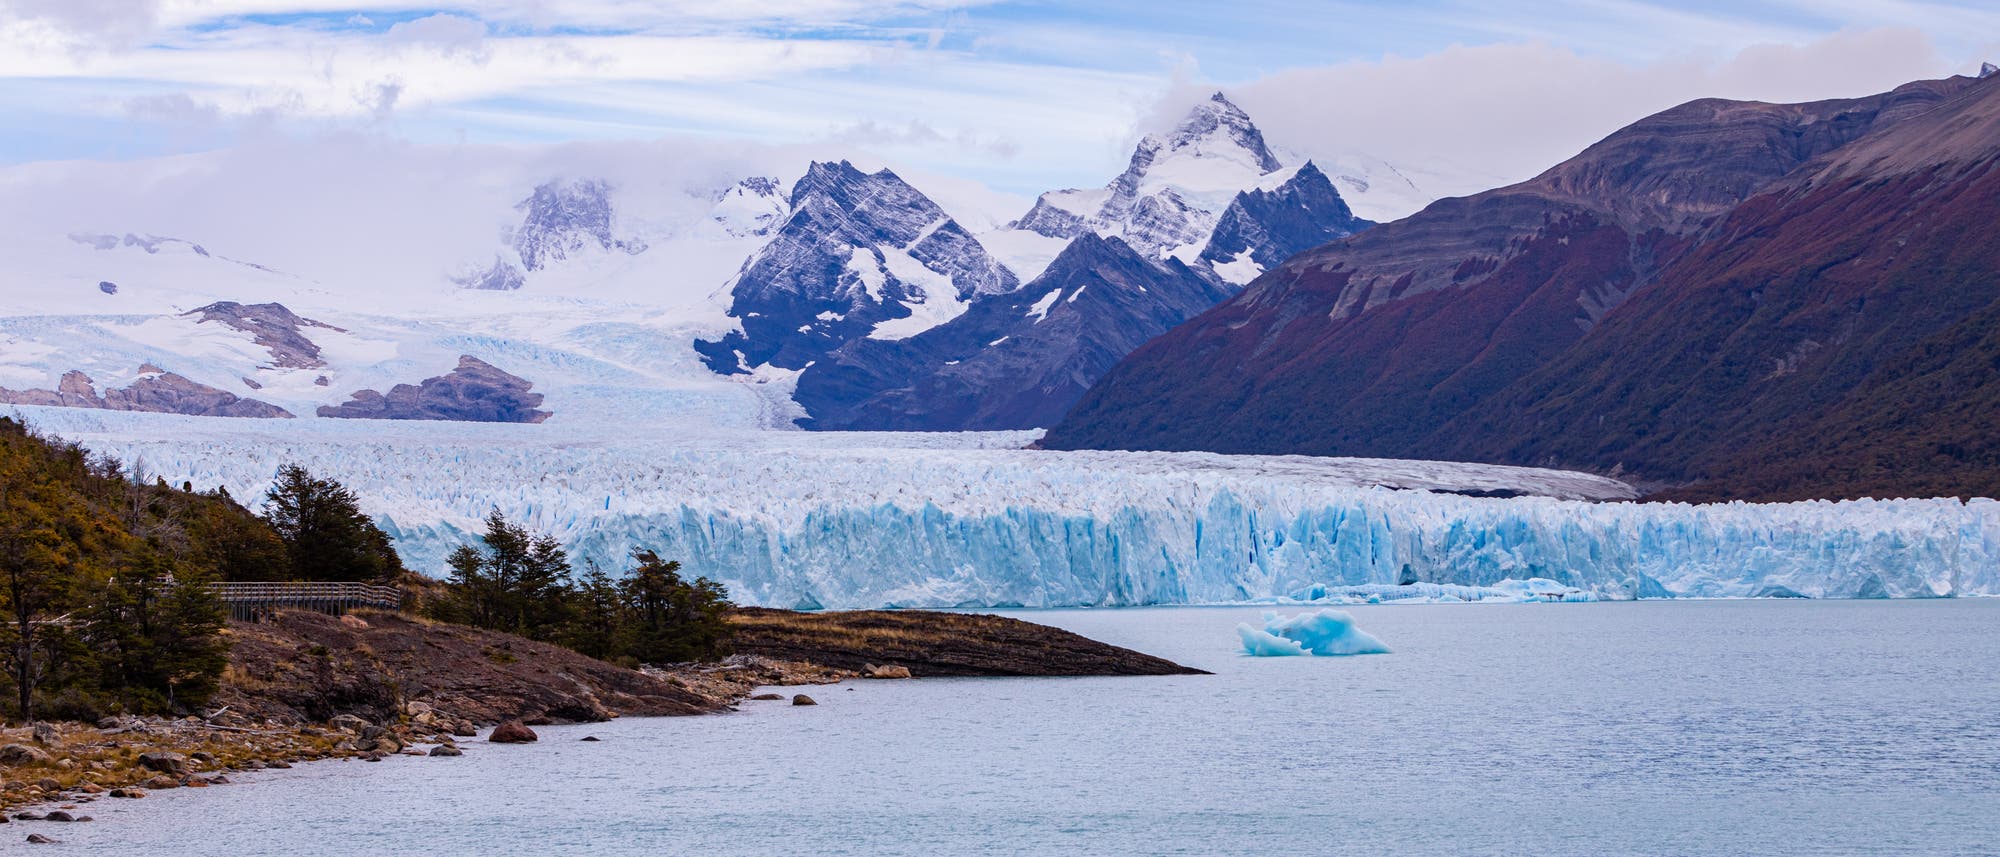 Die zerklüftete Zunge des Glaciar Perito Moreno in Patagonien mündet in einen See. Im Hintergrund ein schneebedecktes Gebirge.